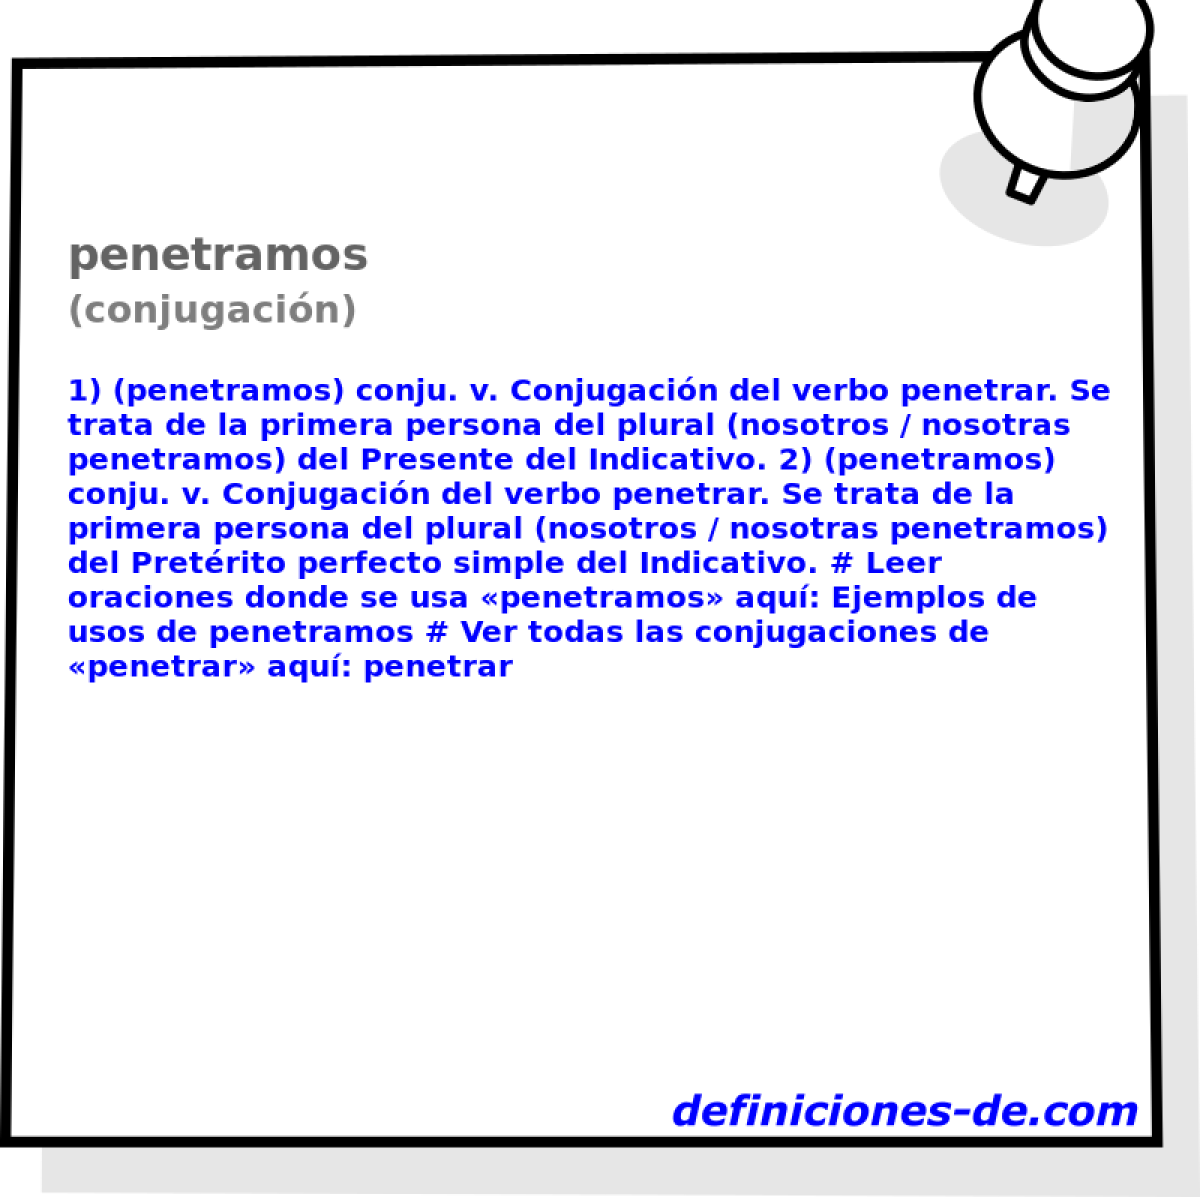 penetramos (conjugacin)